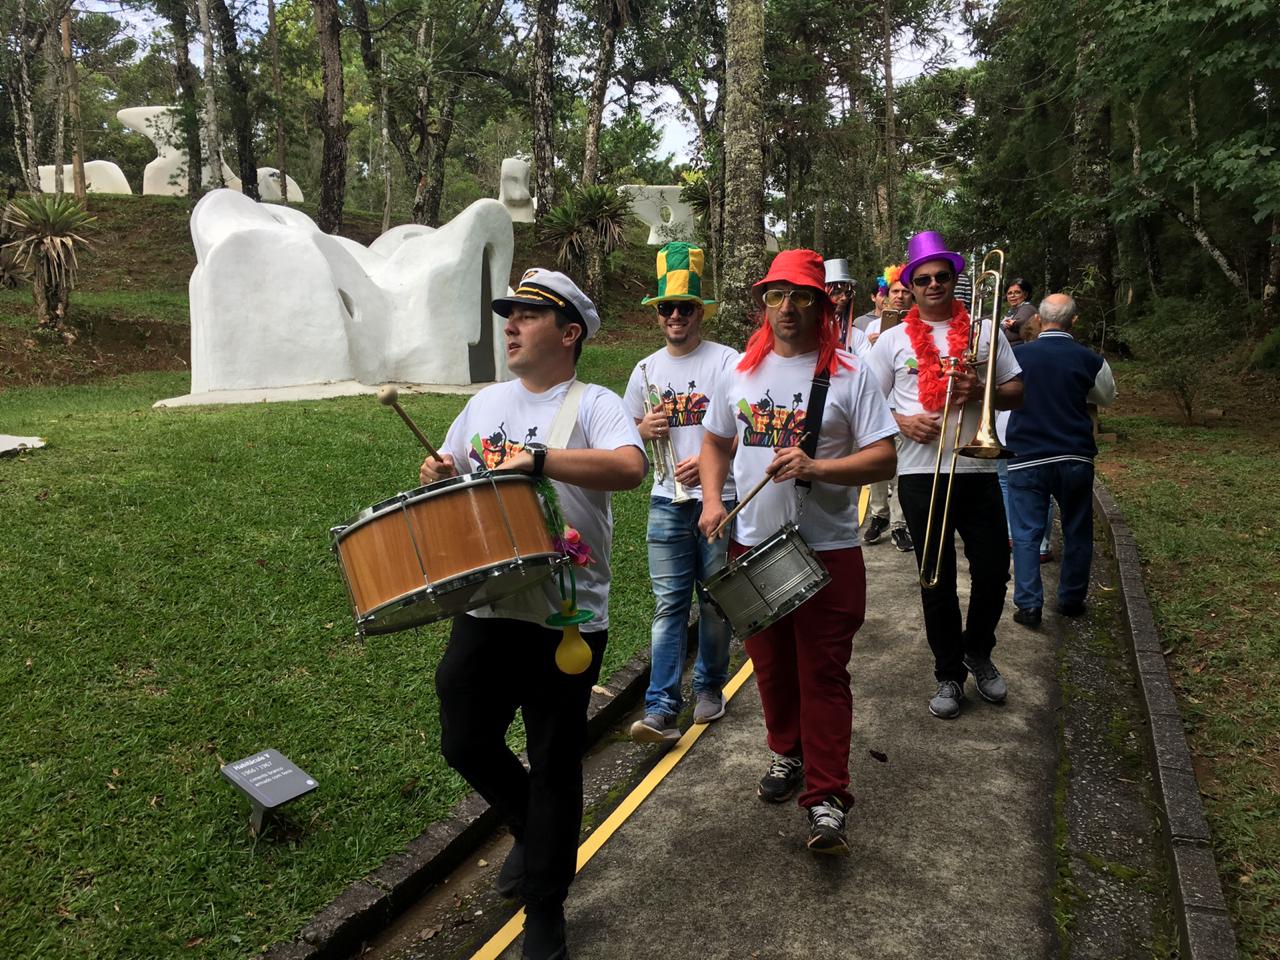 Na imagem, uma banda está caminhando pelas alamedas do Museu Felícia Leirner tocando instrumentos de sopro e percussão. Os integrantes da banda estão utilizando alguns objetos carnavalescos.